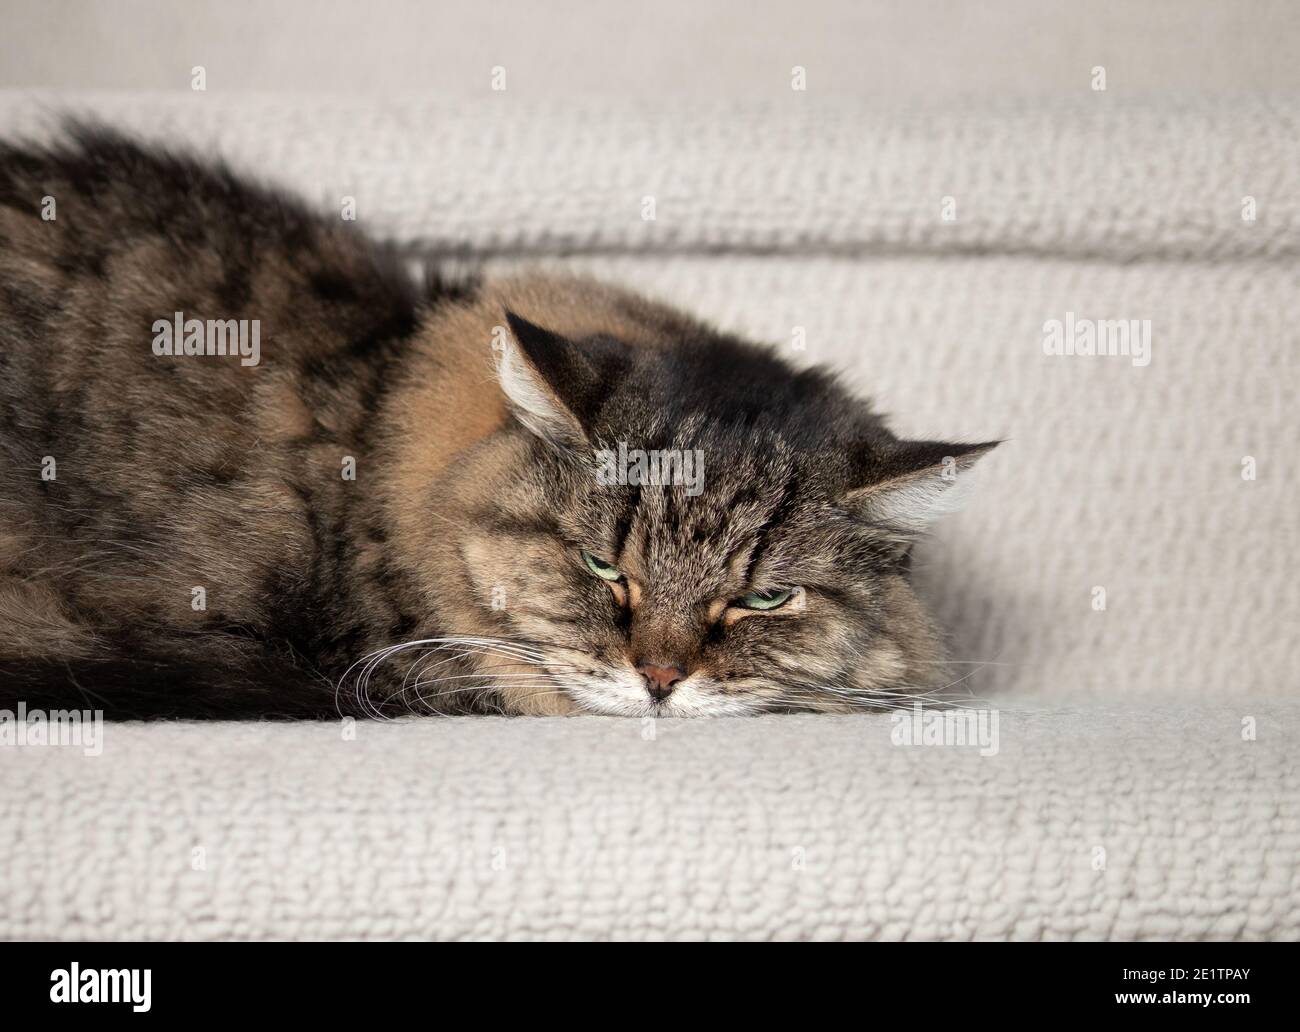 Le chat craque ou craque. Brun cheveux longs senior femelle tabby chat (14 ans) couché sur le côté avec la tête enfoncée sur les escaliers. Concept pour Angry Banque D'Images